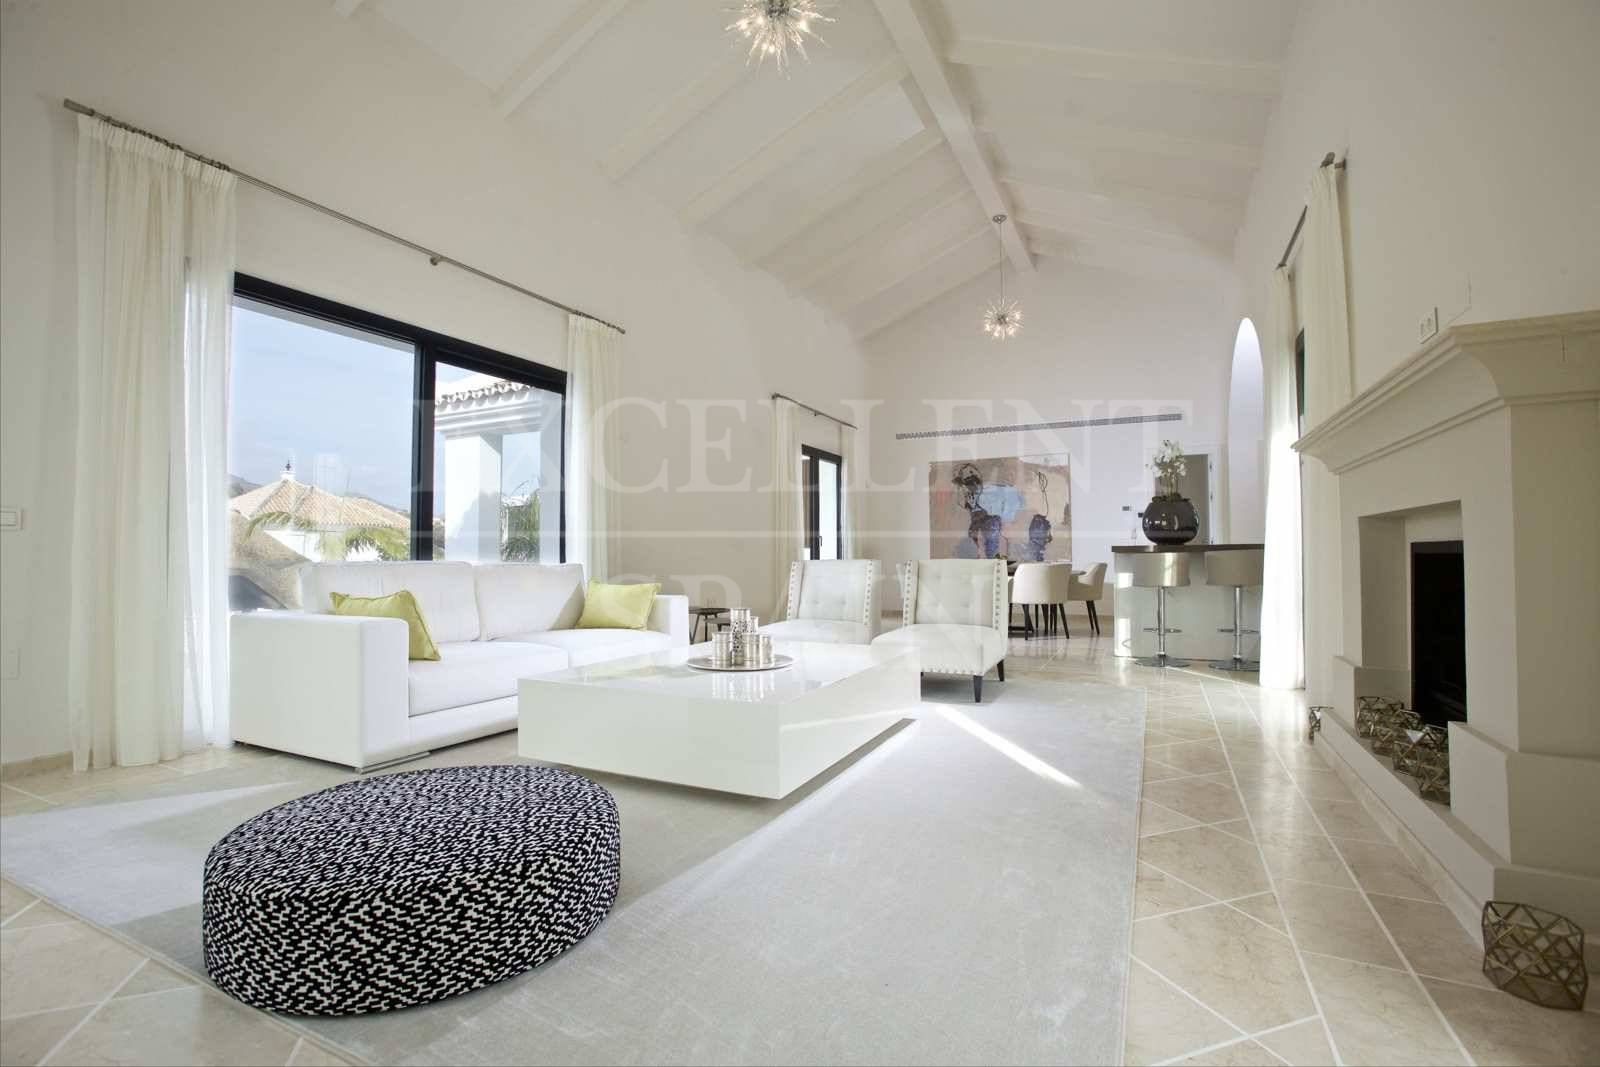 Los Naranjos Golf, Nueva Andalucia, Marbella in contemporary style renovated villa for sale